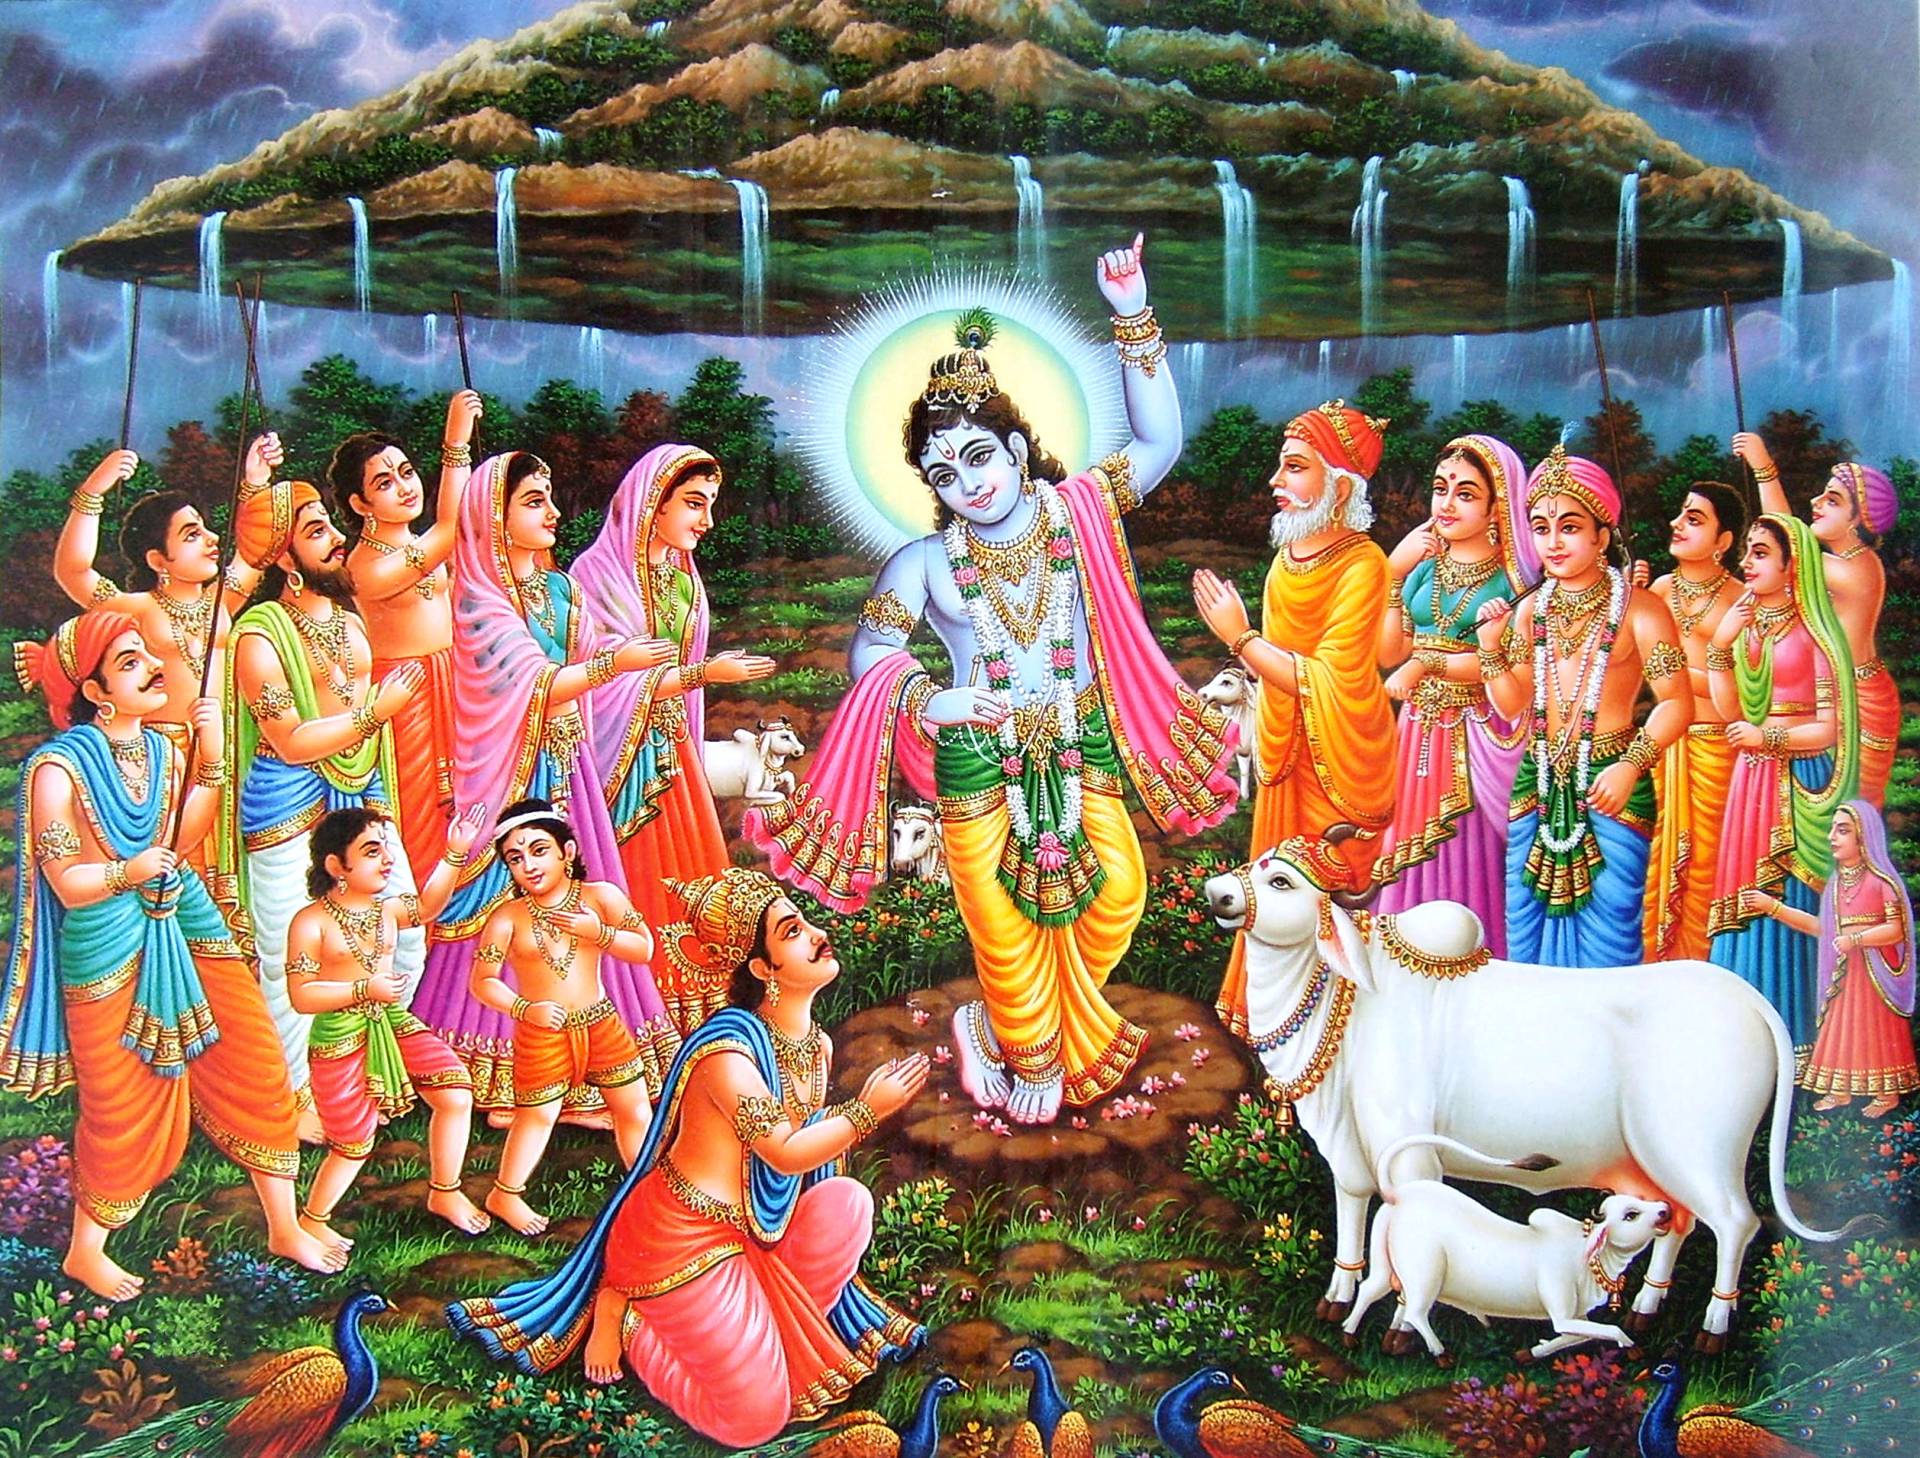 Krishna Goverdhana